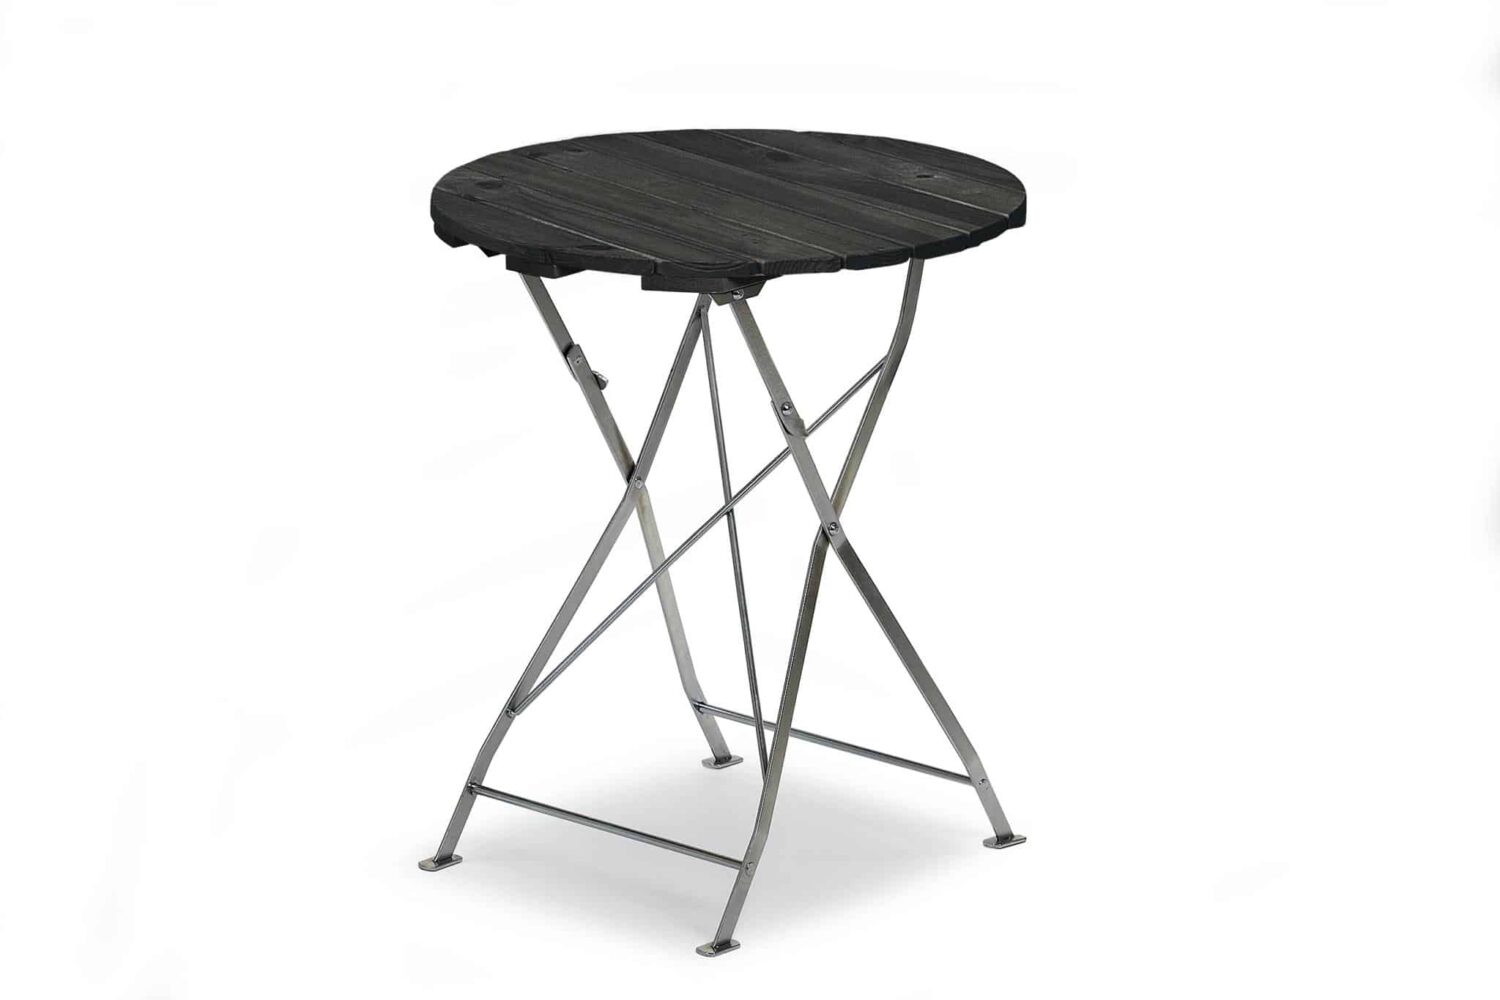 Hillerstorp Krögaren Bord Ø60 cm. Cafebord med stomme av förzinkat stål, bordsskiva i svartlaserad trä.